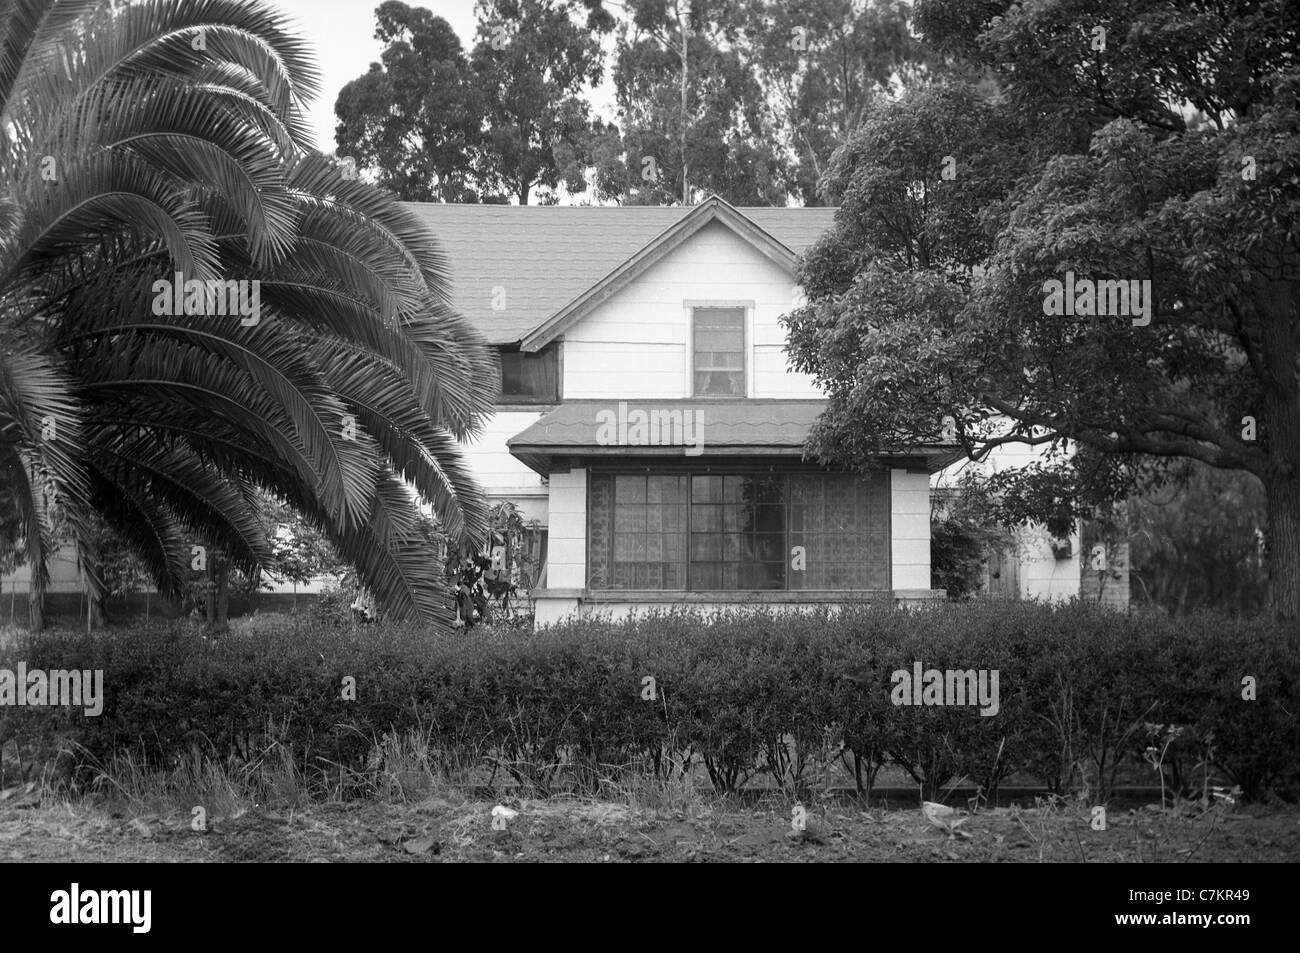 Haus mit Palmen Bäume südlichen Kalifornien 1920s 1930s Architektur Los Angeles und Umgebung Stockfoto